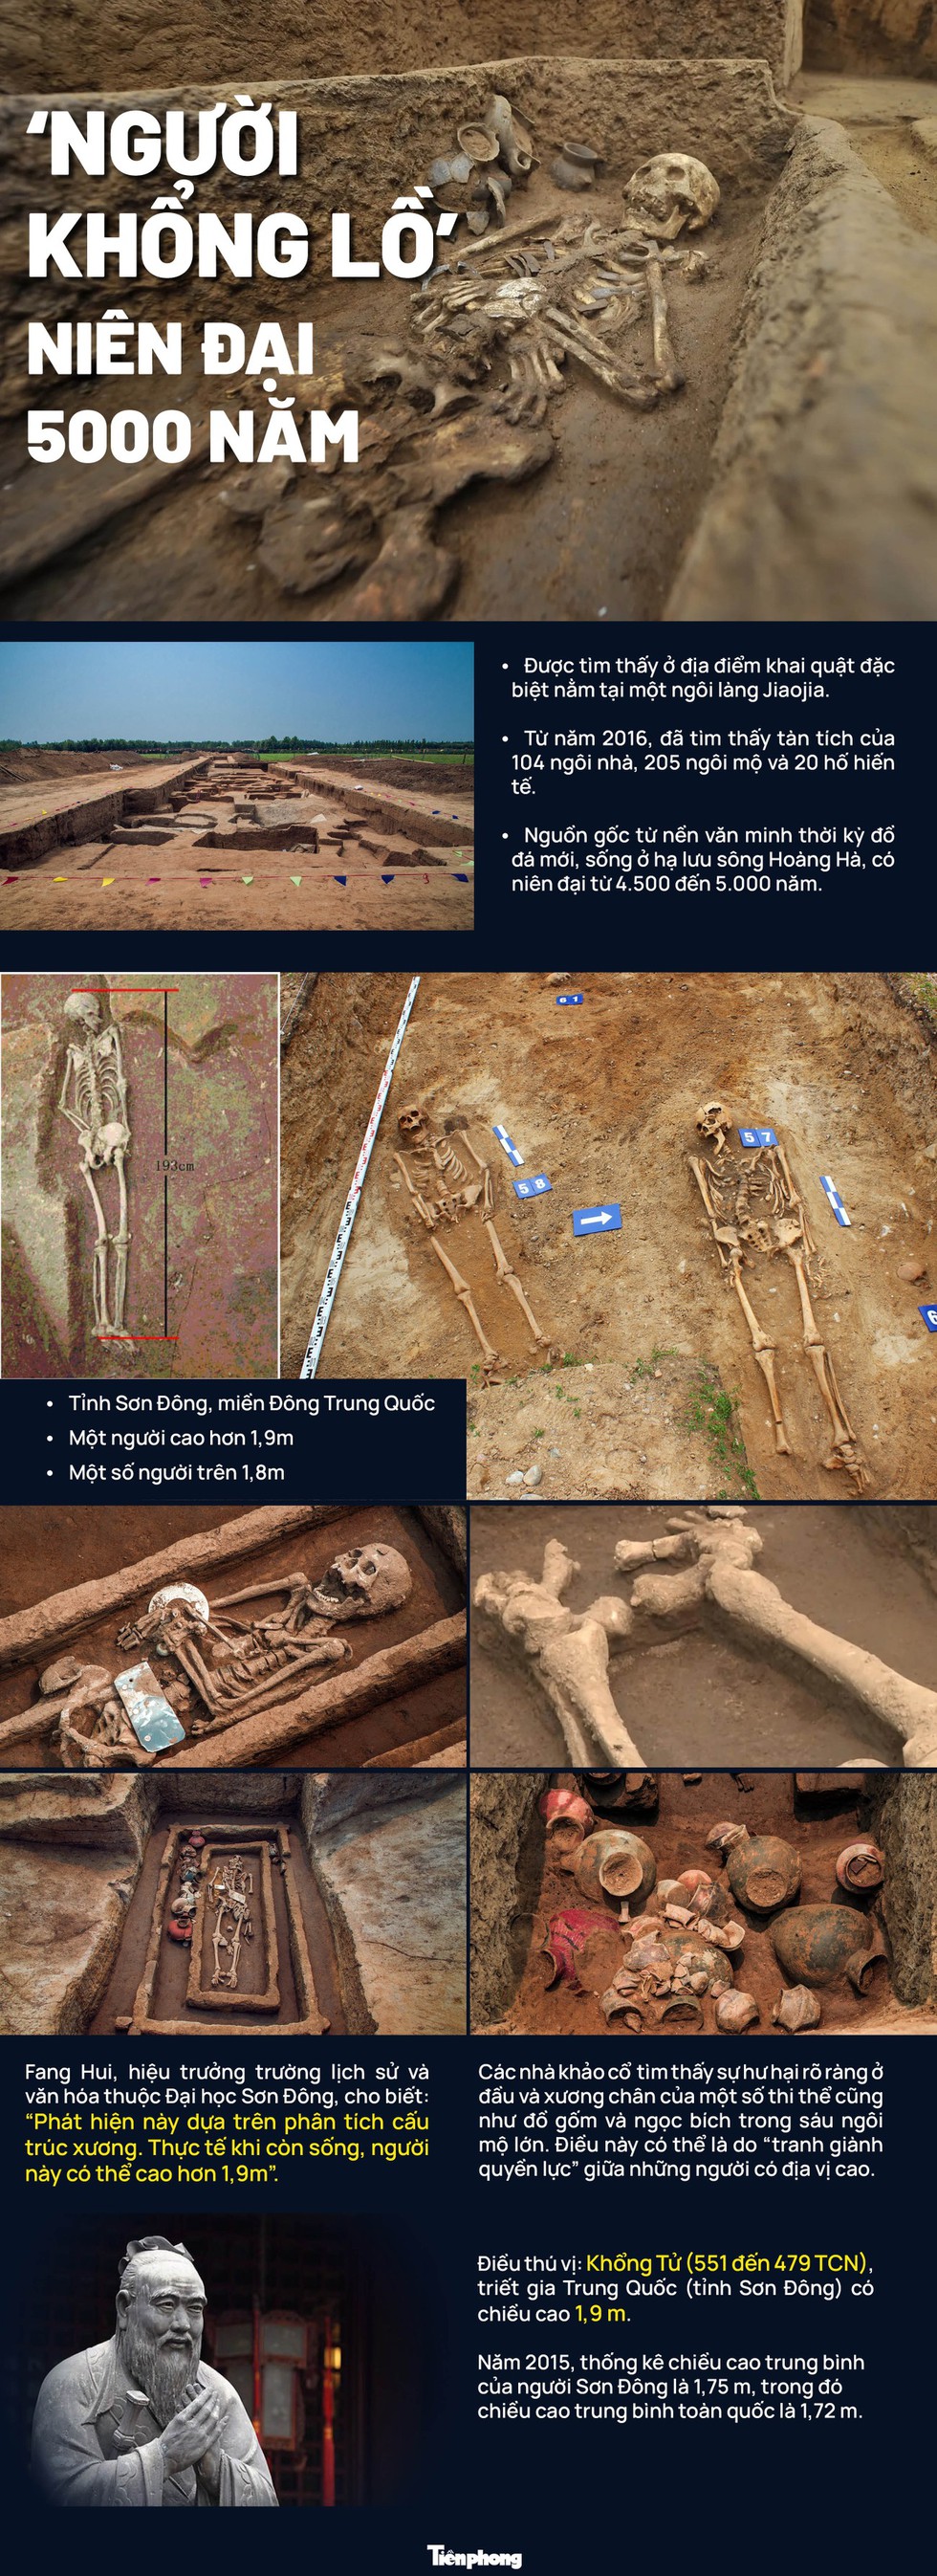 Kinh ngạc bộ xương 5.000 năm tuổi: Manh mối bộ tộc người khổng lồ? - Ảnh 1.